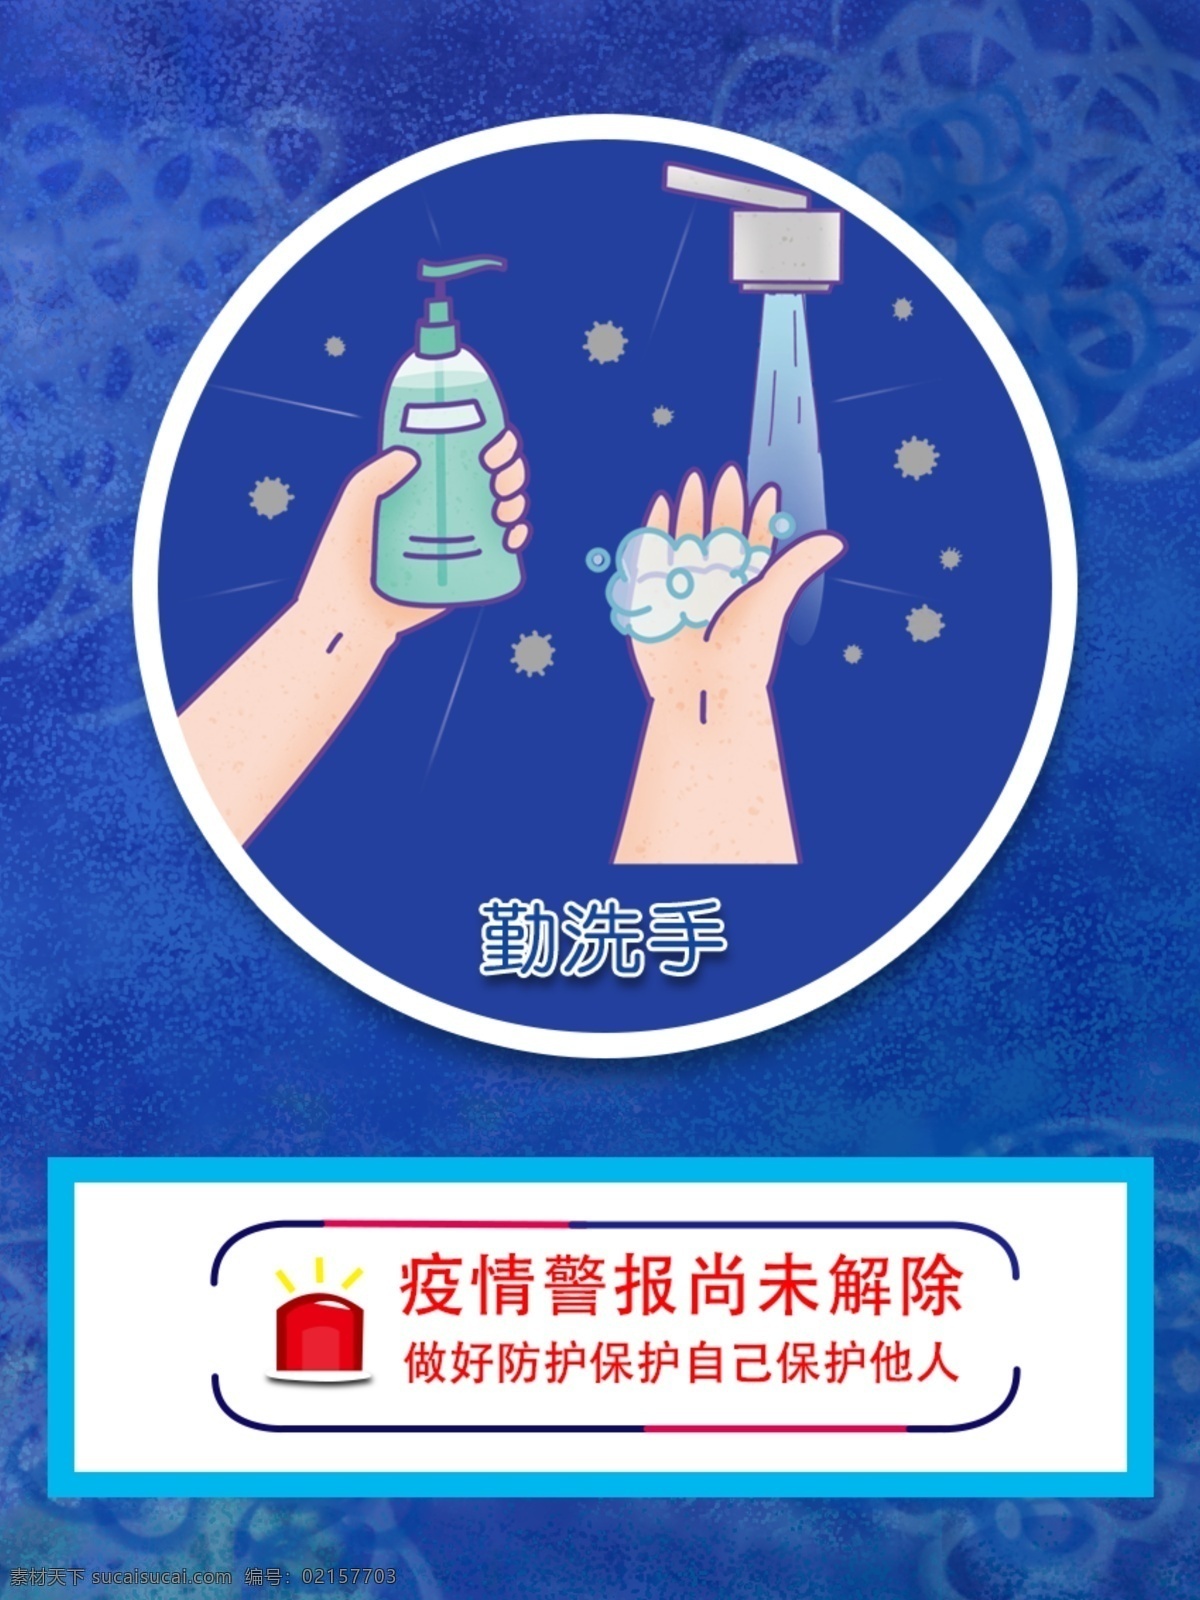 勤洗手 疫情 预防 洗手 防疫 有责